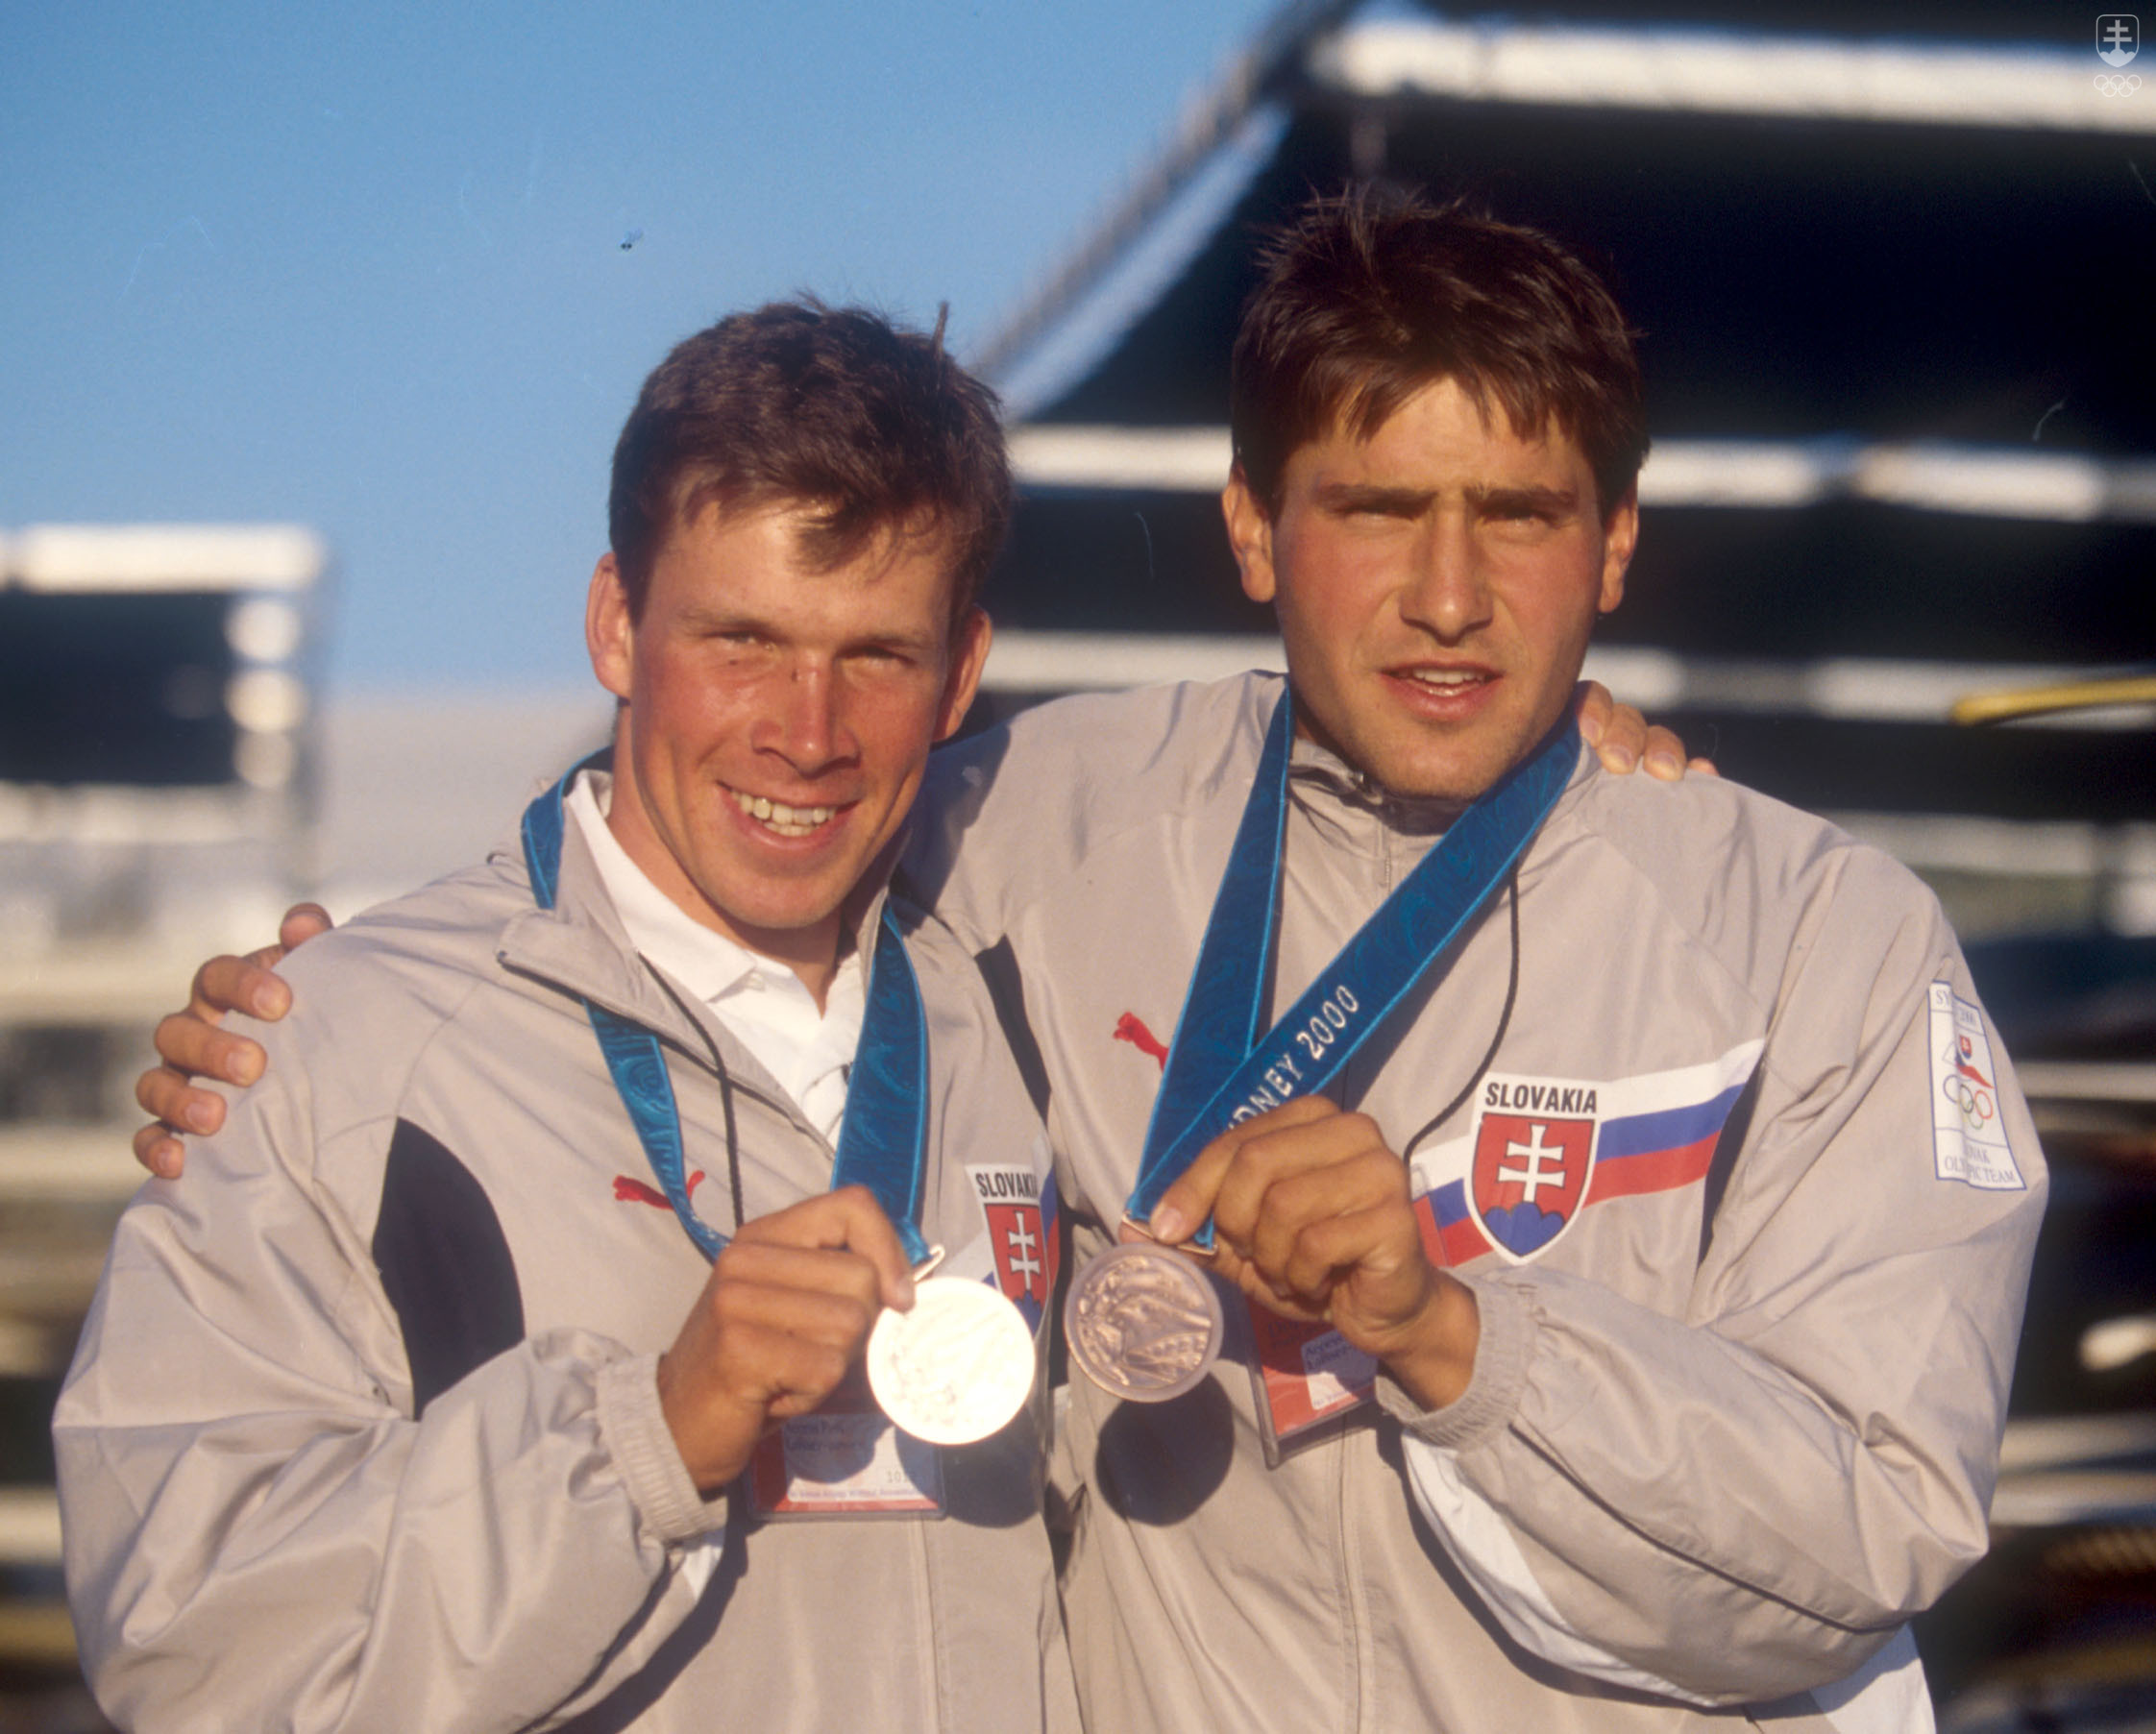 Zatiaľ jediný raz malo Slovensko na olympijskom medailovom stupni až dvoch pretekárov - v Sydney 2000 sa to podarilo singlkanoistom na divokej vode Michalovi Martikánovi a Jurajovi Minčíkovi.